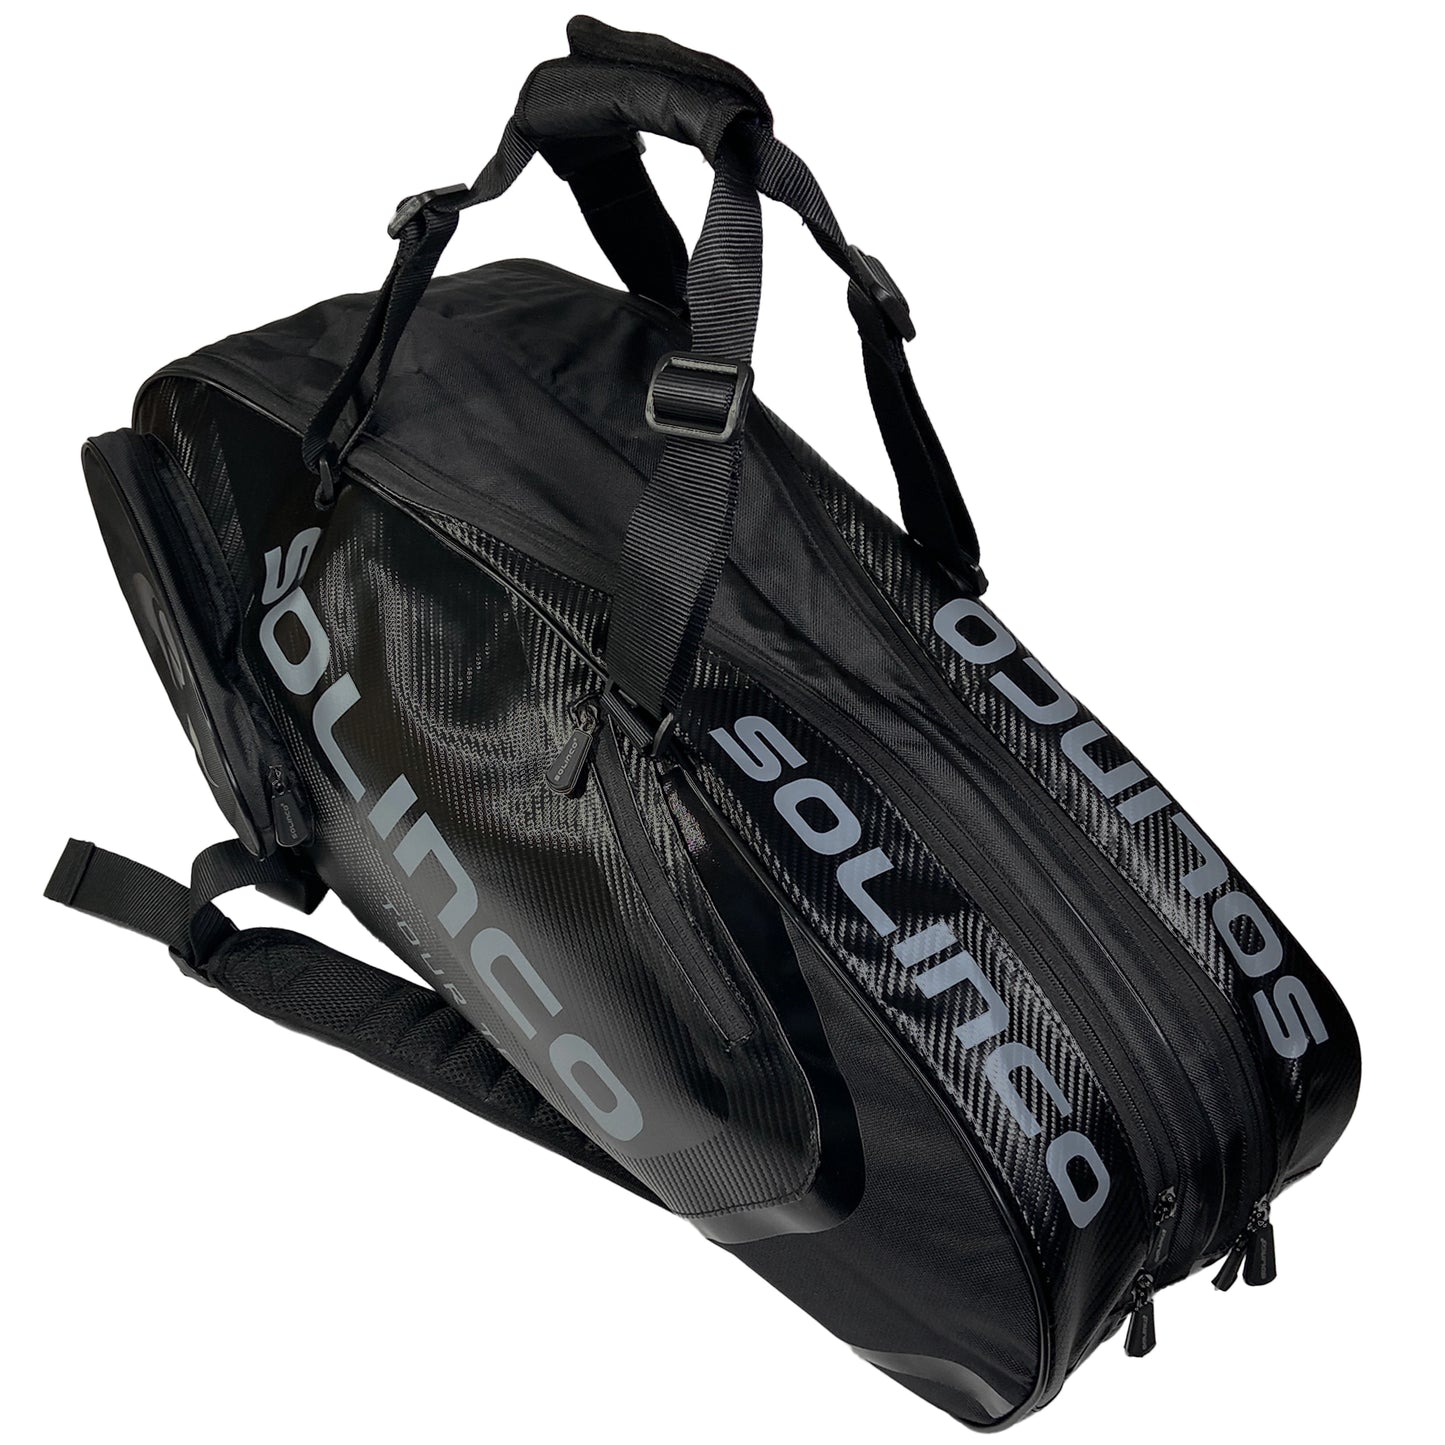 Solinco Tour Racquet Bag 6R Blackout